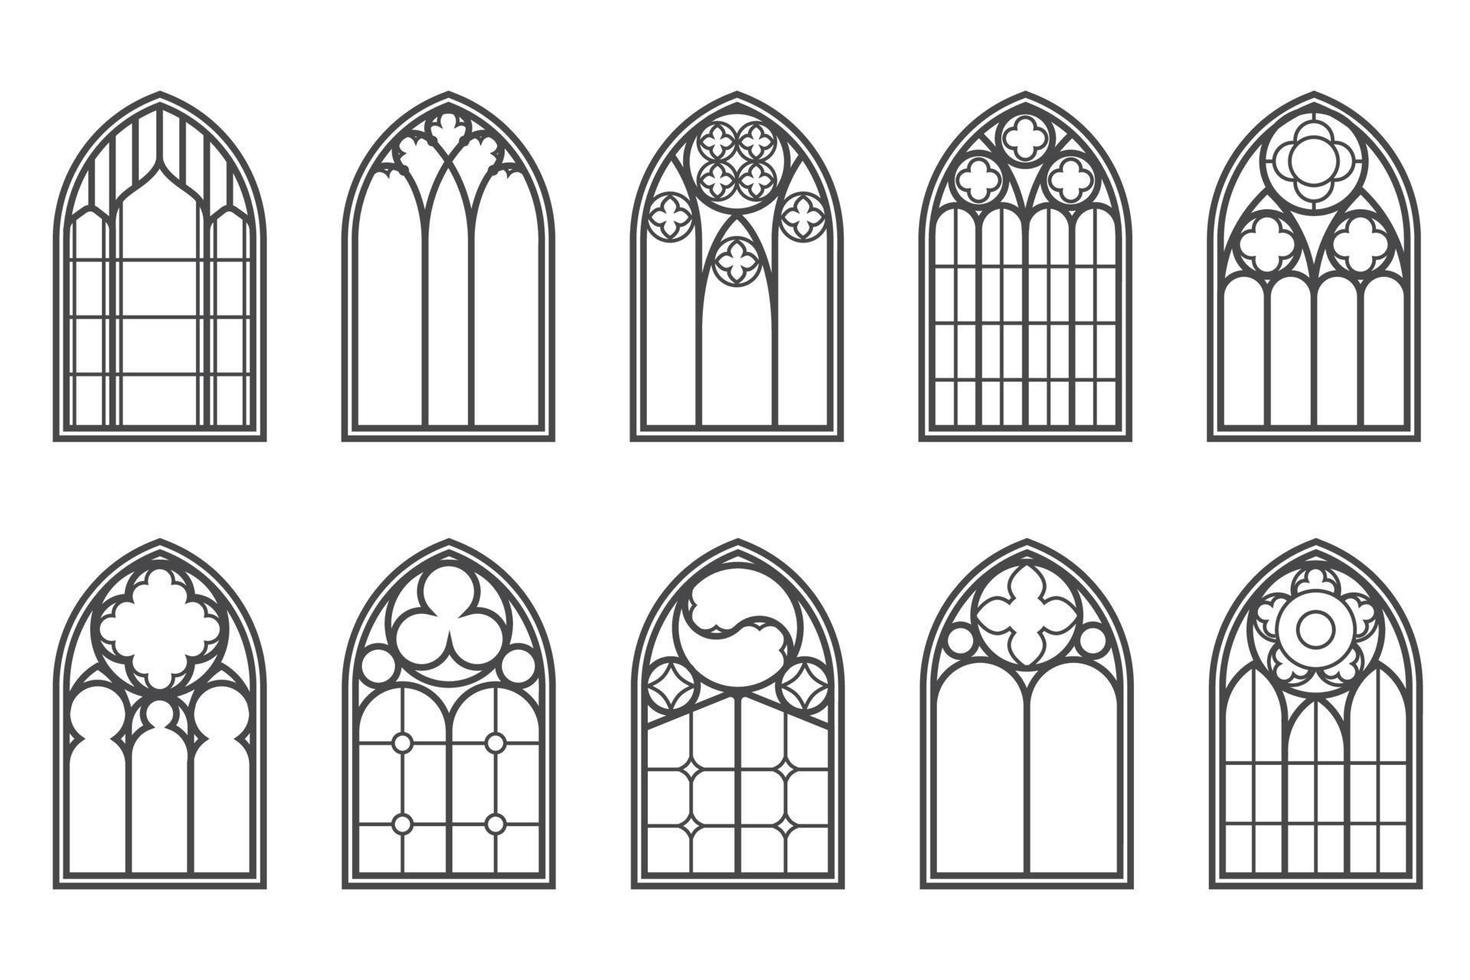 mittelalterliche fenster der kirche gesetzt. alte gotische architekturelemente. vektorumrissillustration auf weißem hintergrund. vektor